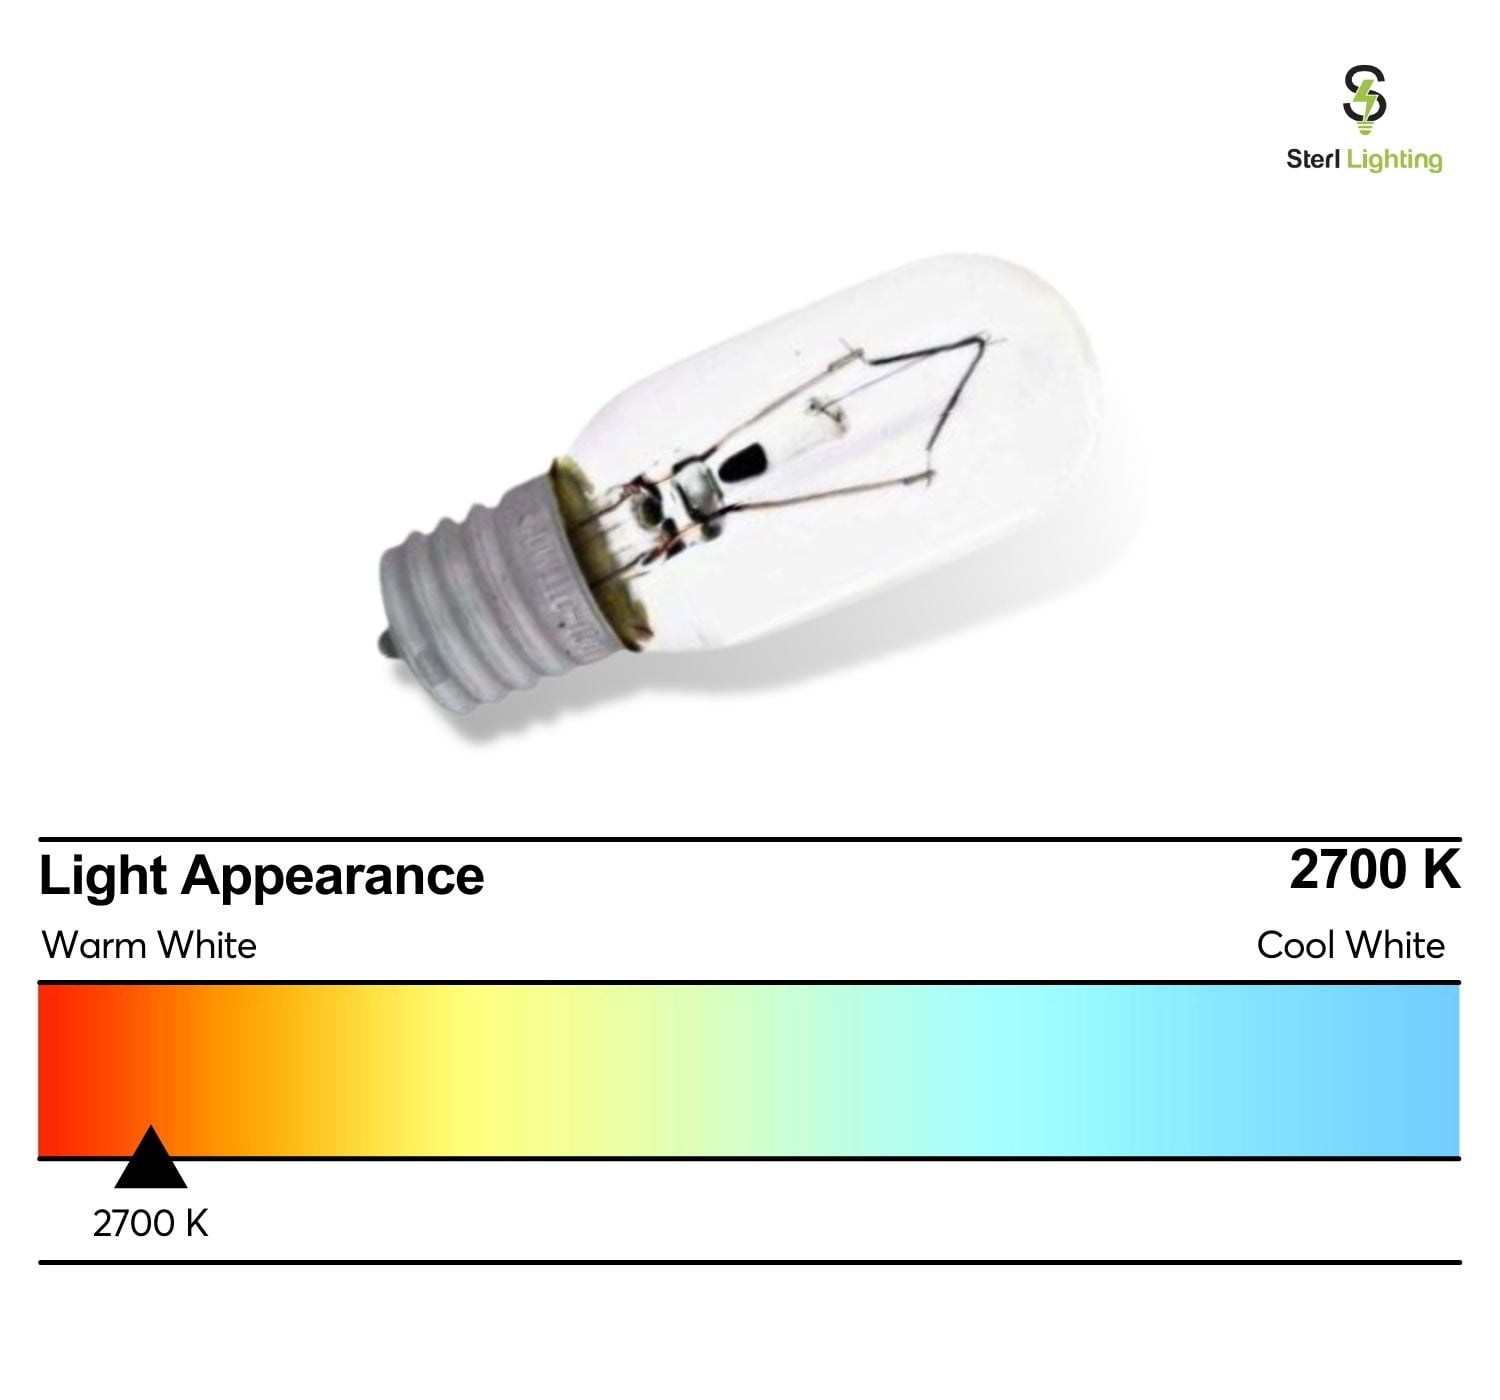 Sterl Lighting (6 Pack) 40T6.5/CL/N 40-Watt Clear Tubular Intermediate (E17) Base Incandescent T6.5 Light Bulb